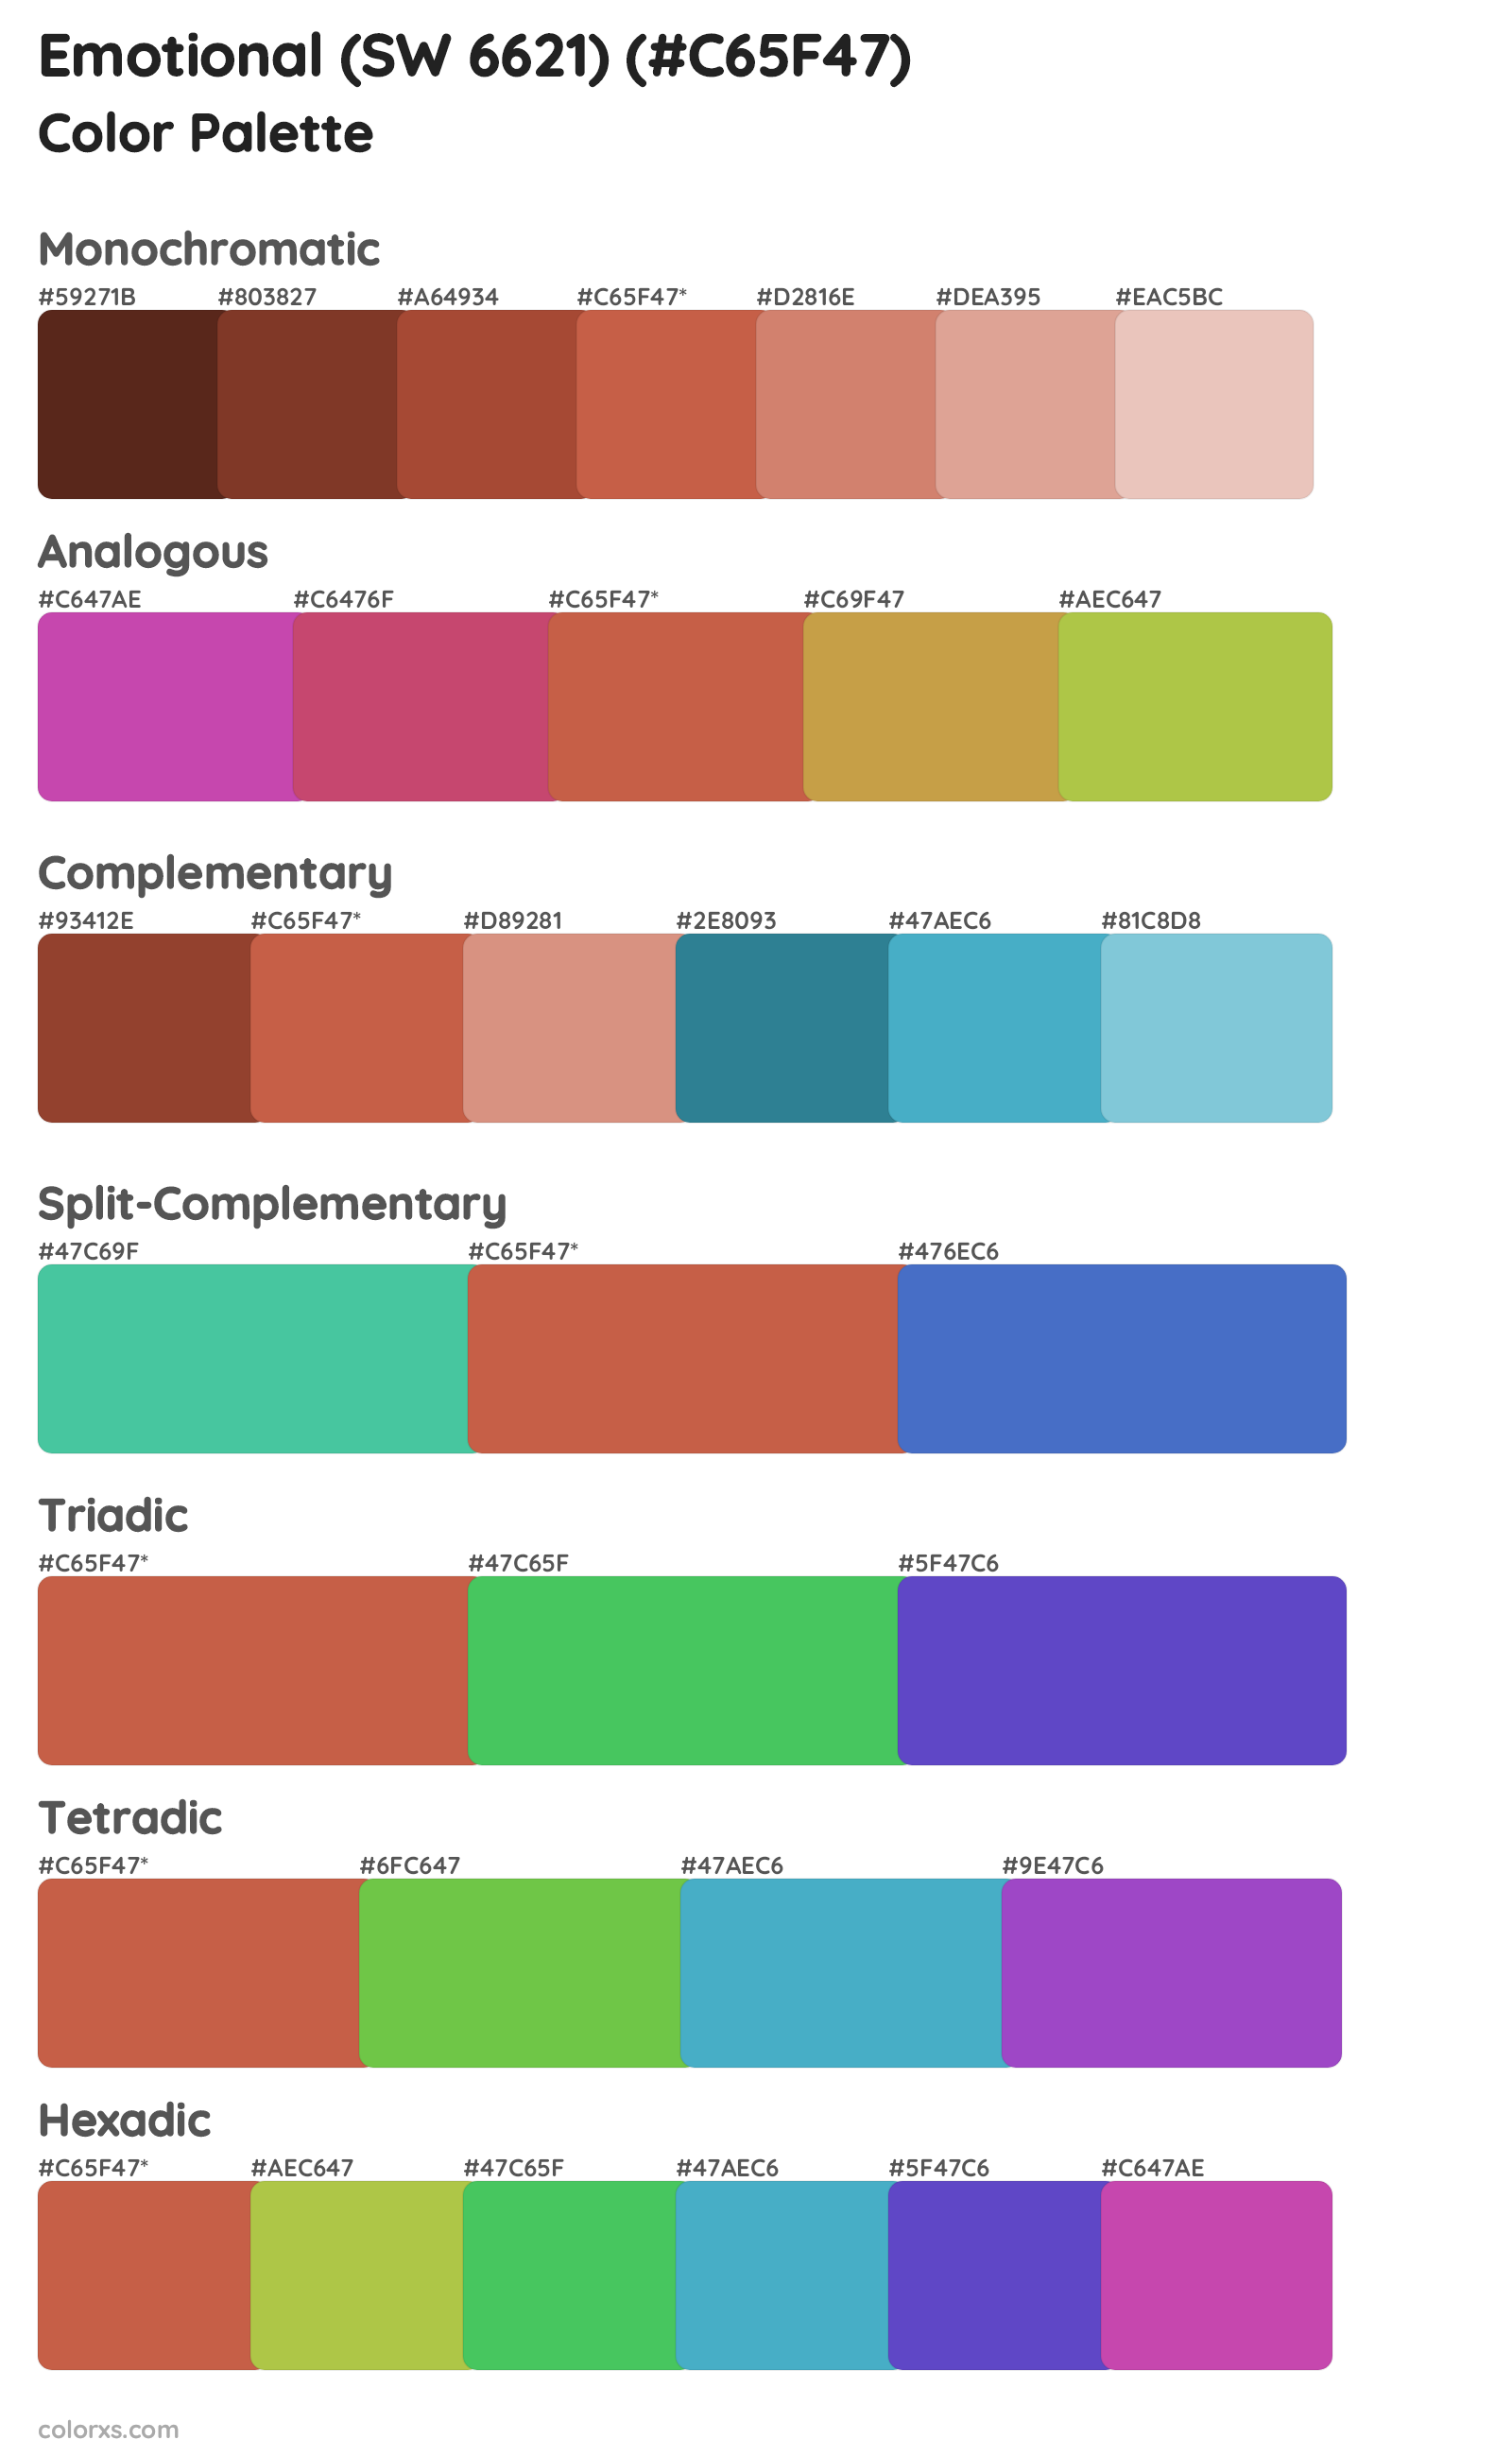 Emotional (SW 6621) Color Scheme Palettes